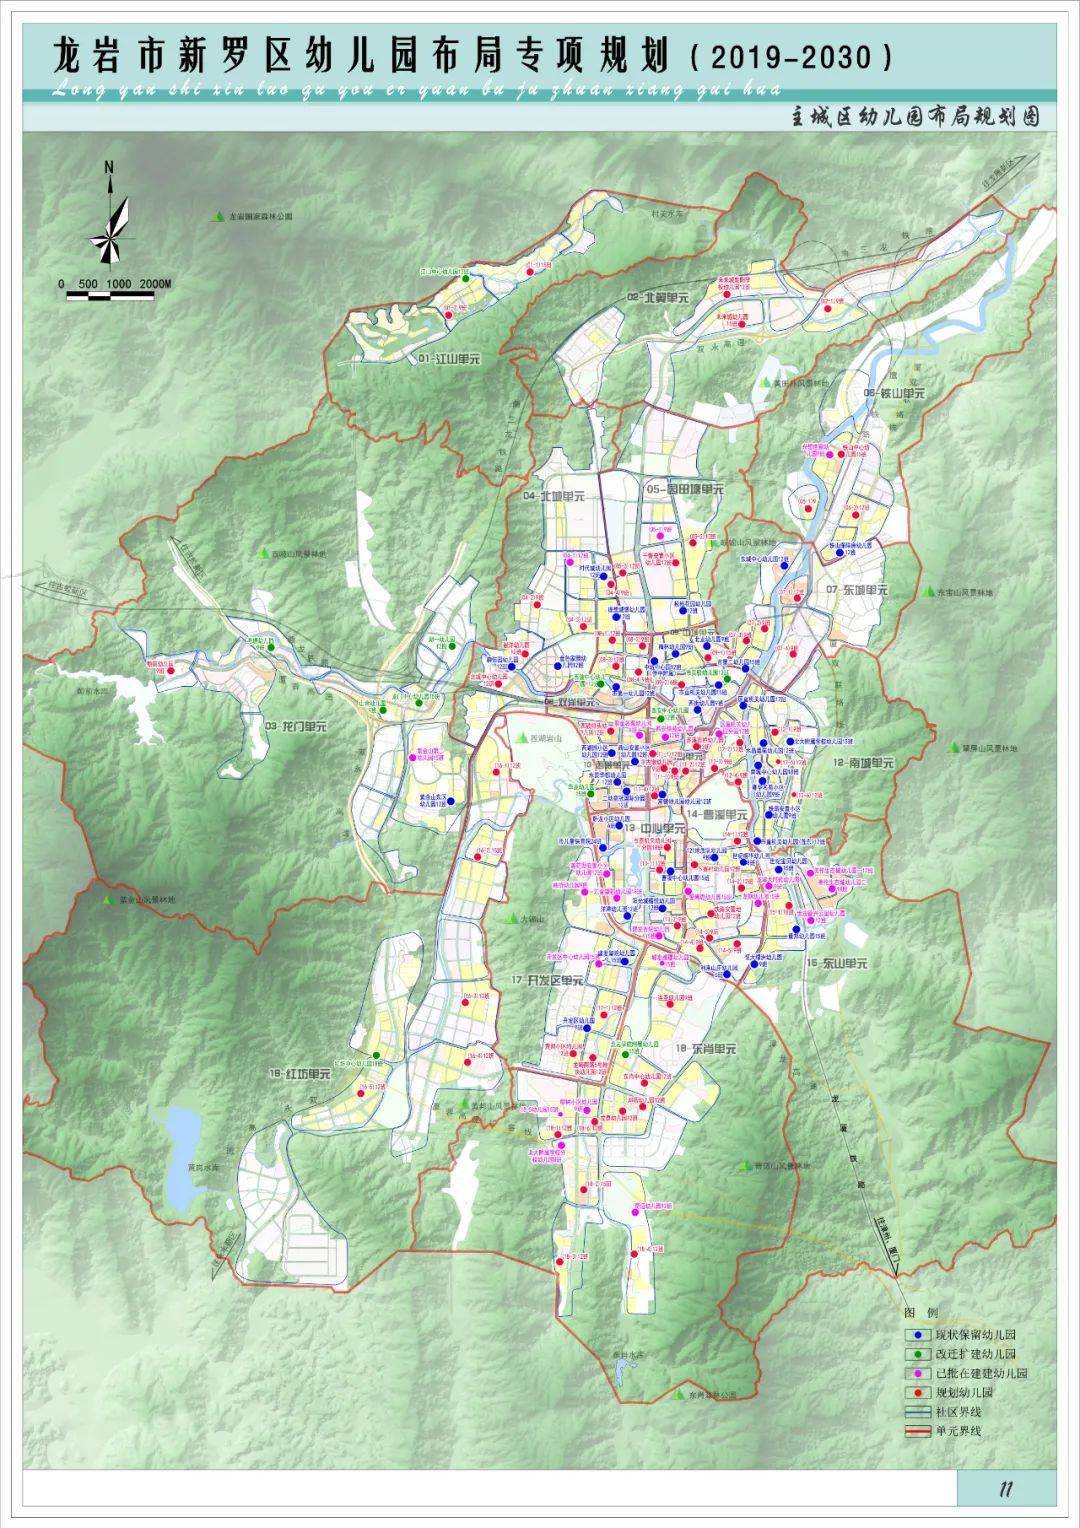 主城区幼儿园布局规划图一,规划范围规划范围为龙岩市新罗区行政辖区